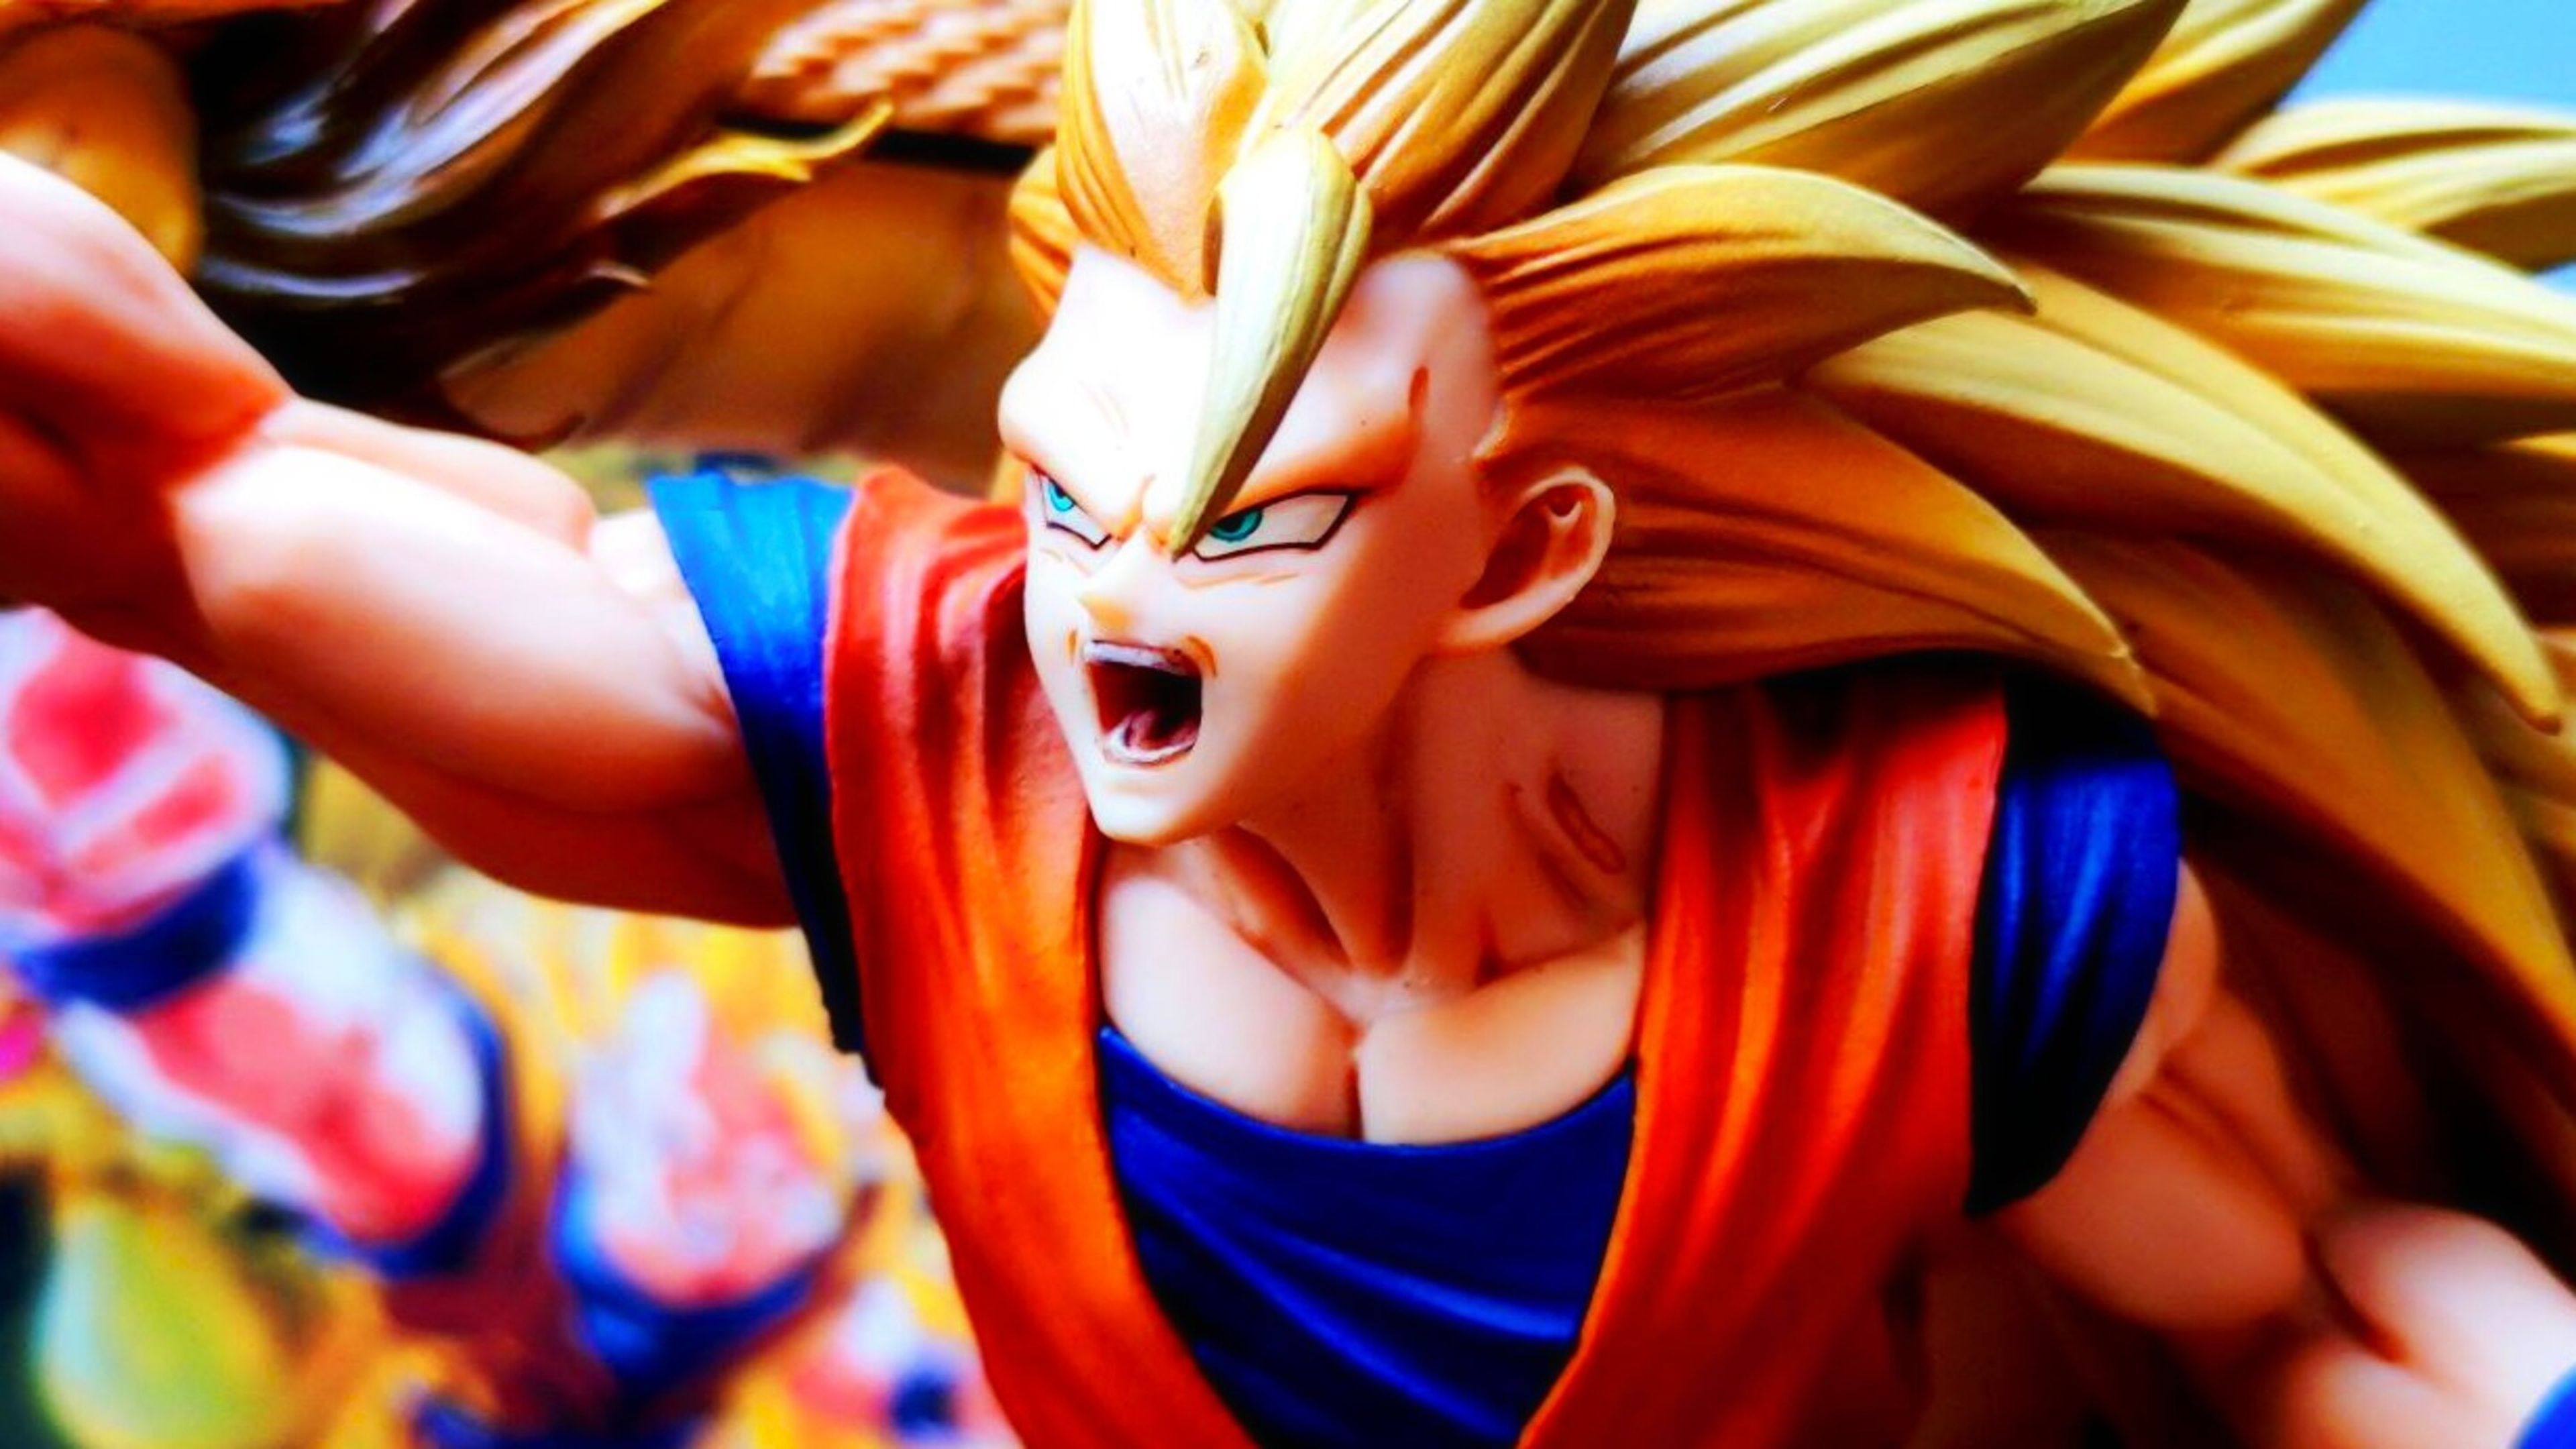 Dragon Ball Z - Unboxing de la figura más explosiva de Goku Super Saiyan 3 haciendo el puño dragón